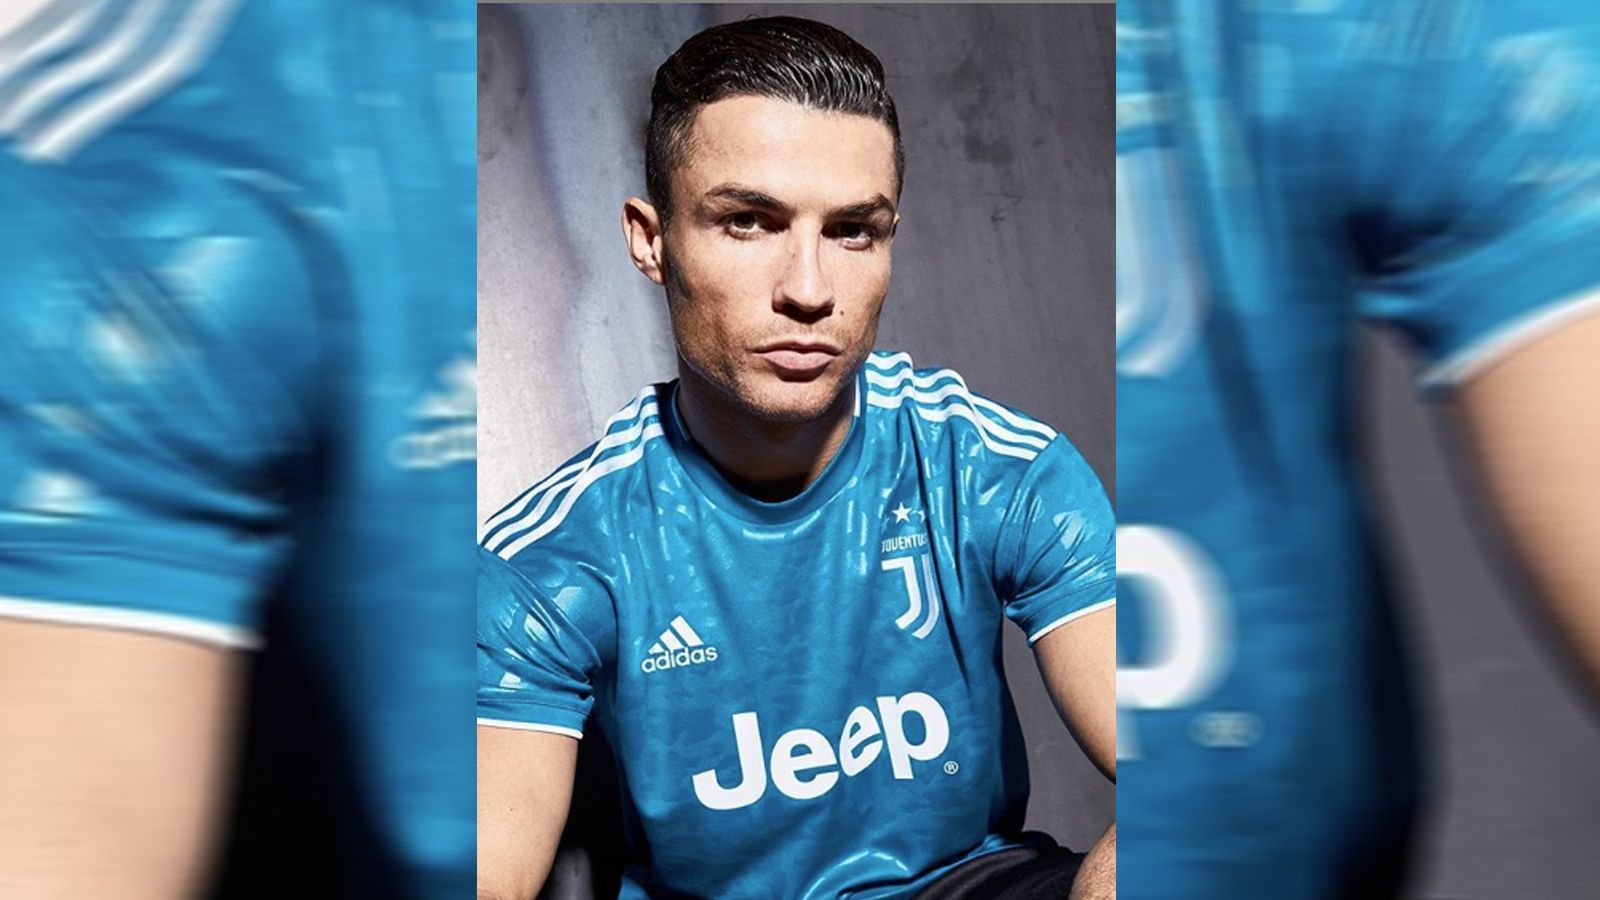 
                <strong>Juventus Turin </strong><br>
                Juventus Turin hat sein Ausweichtrikot für die Saison 2019/20 vorgestellt. Das Jersey ist blau-weiß schattiert, wobei das Logo, das Emblem, die Streifen auf der Schulterpartie sowie der Sponsor in weiß gehalten sind. Besonders auffallend ist die reflektierenden Jacquardmusterung im Camouflage-Stil über das ganze Trikot.
              